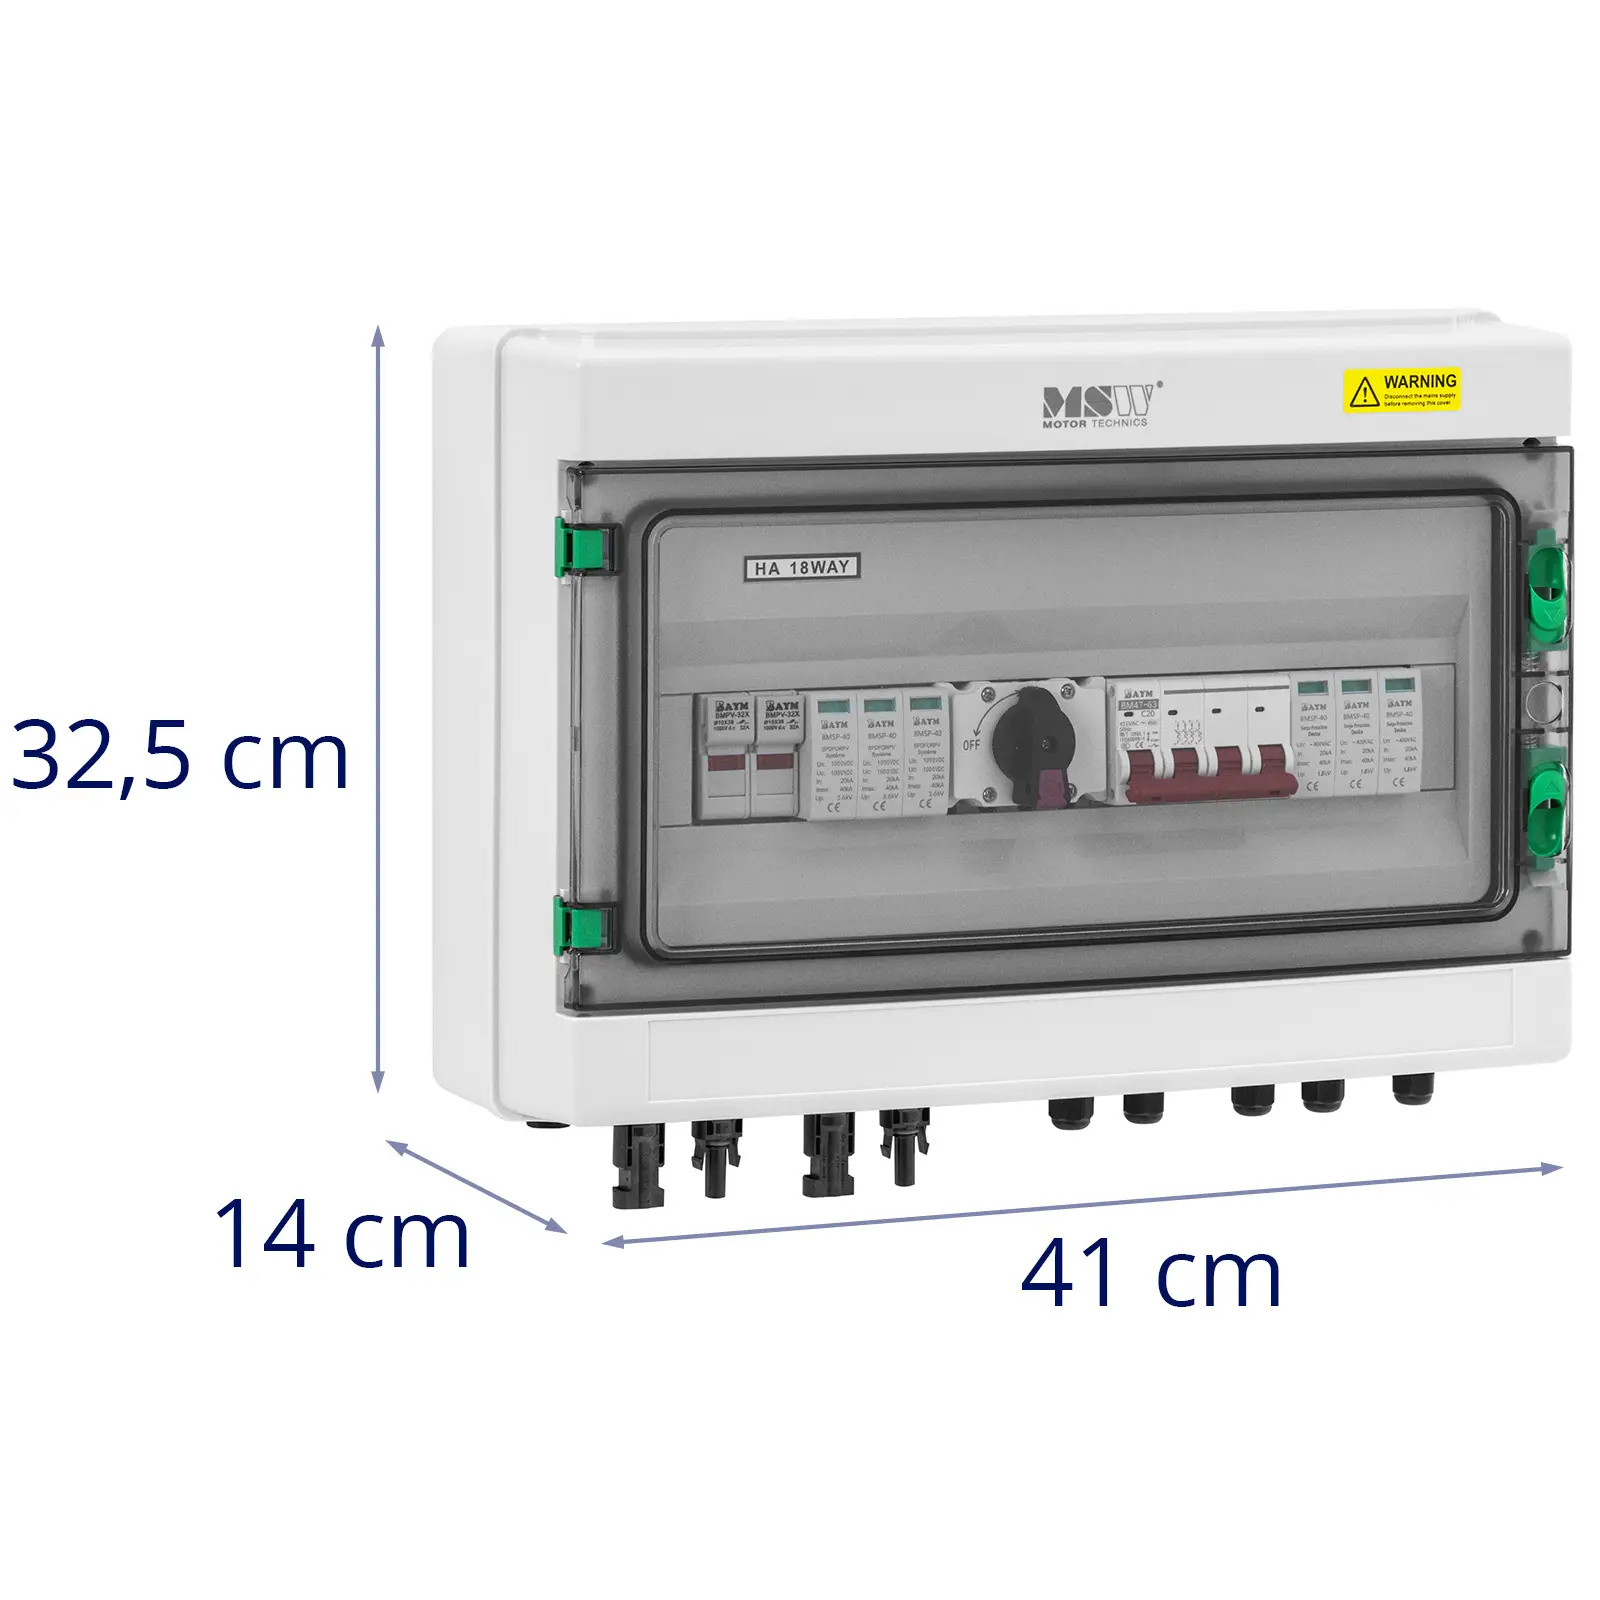 Caixa de derivação com proteção contra sobretensão para sistema fotovoltaico - tipo 2 - 2 entradas / 2 saídas - 1000 V - IP65